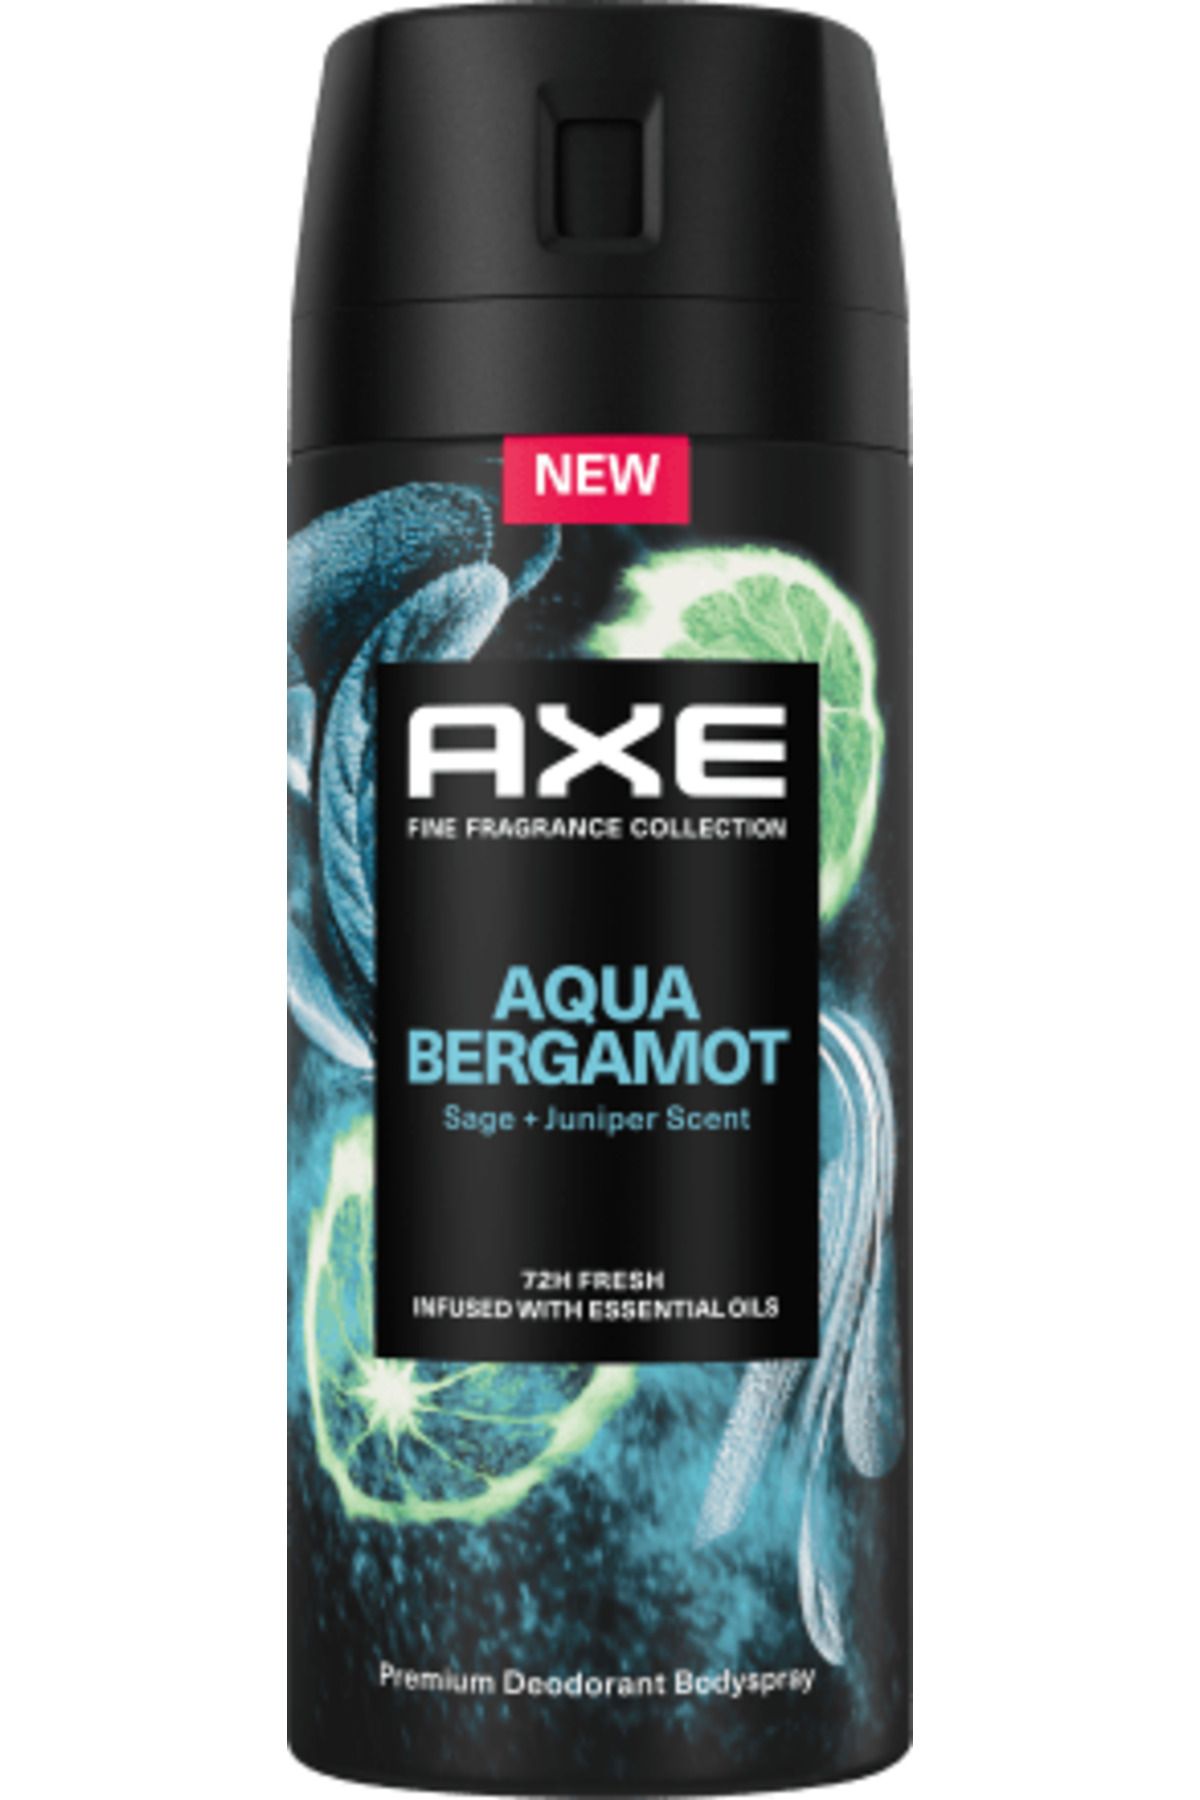 Axe baltaDeodorant sprey Aqua Bergamot, 150 ml